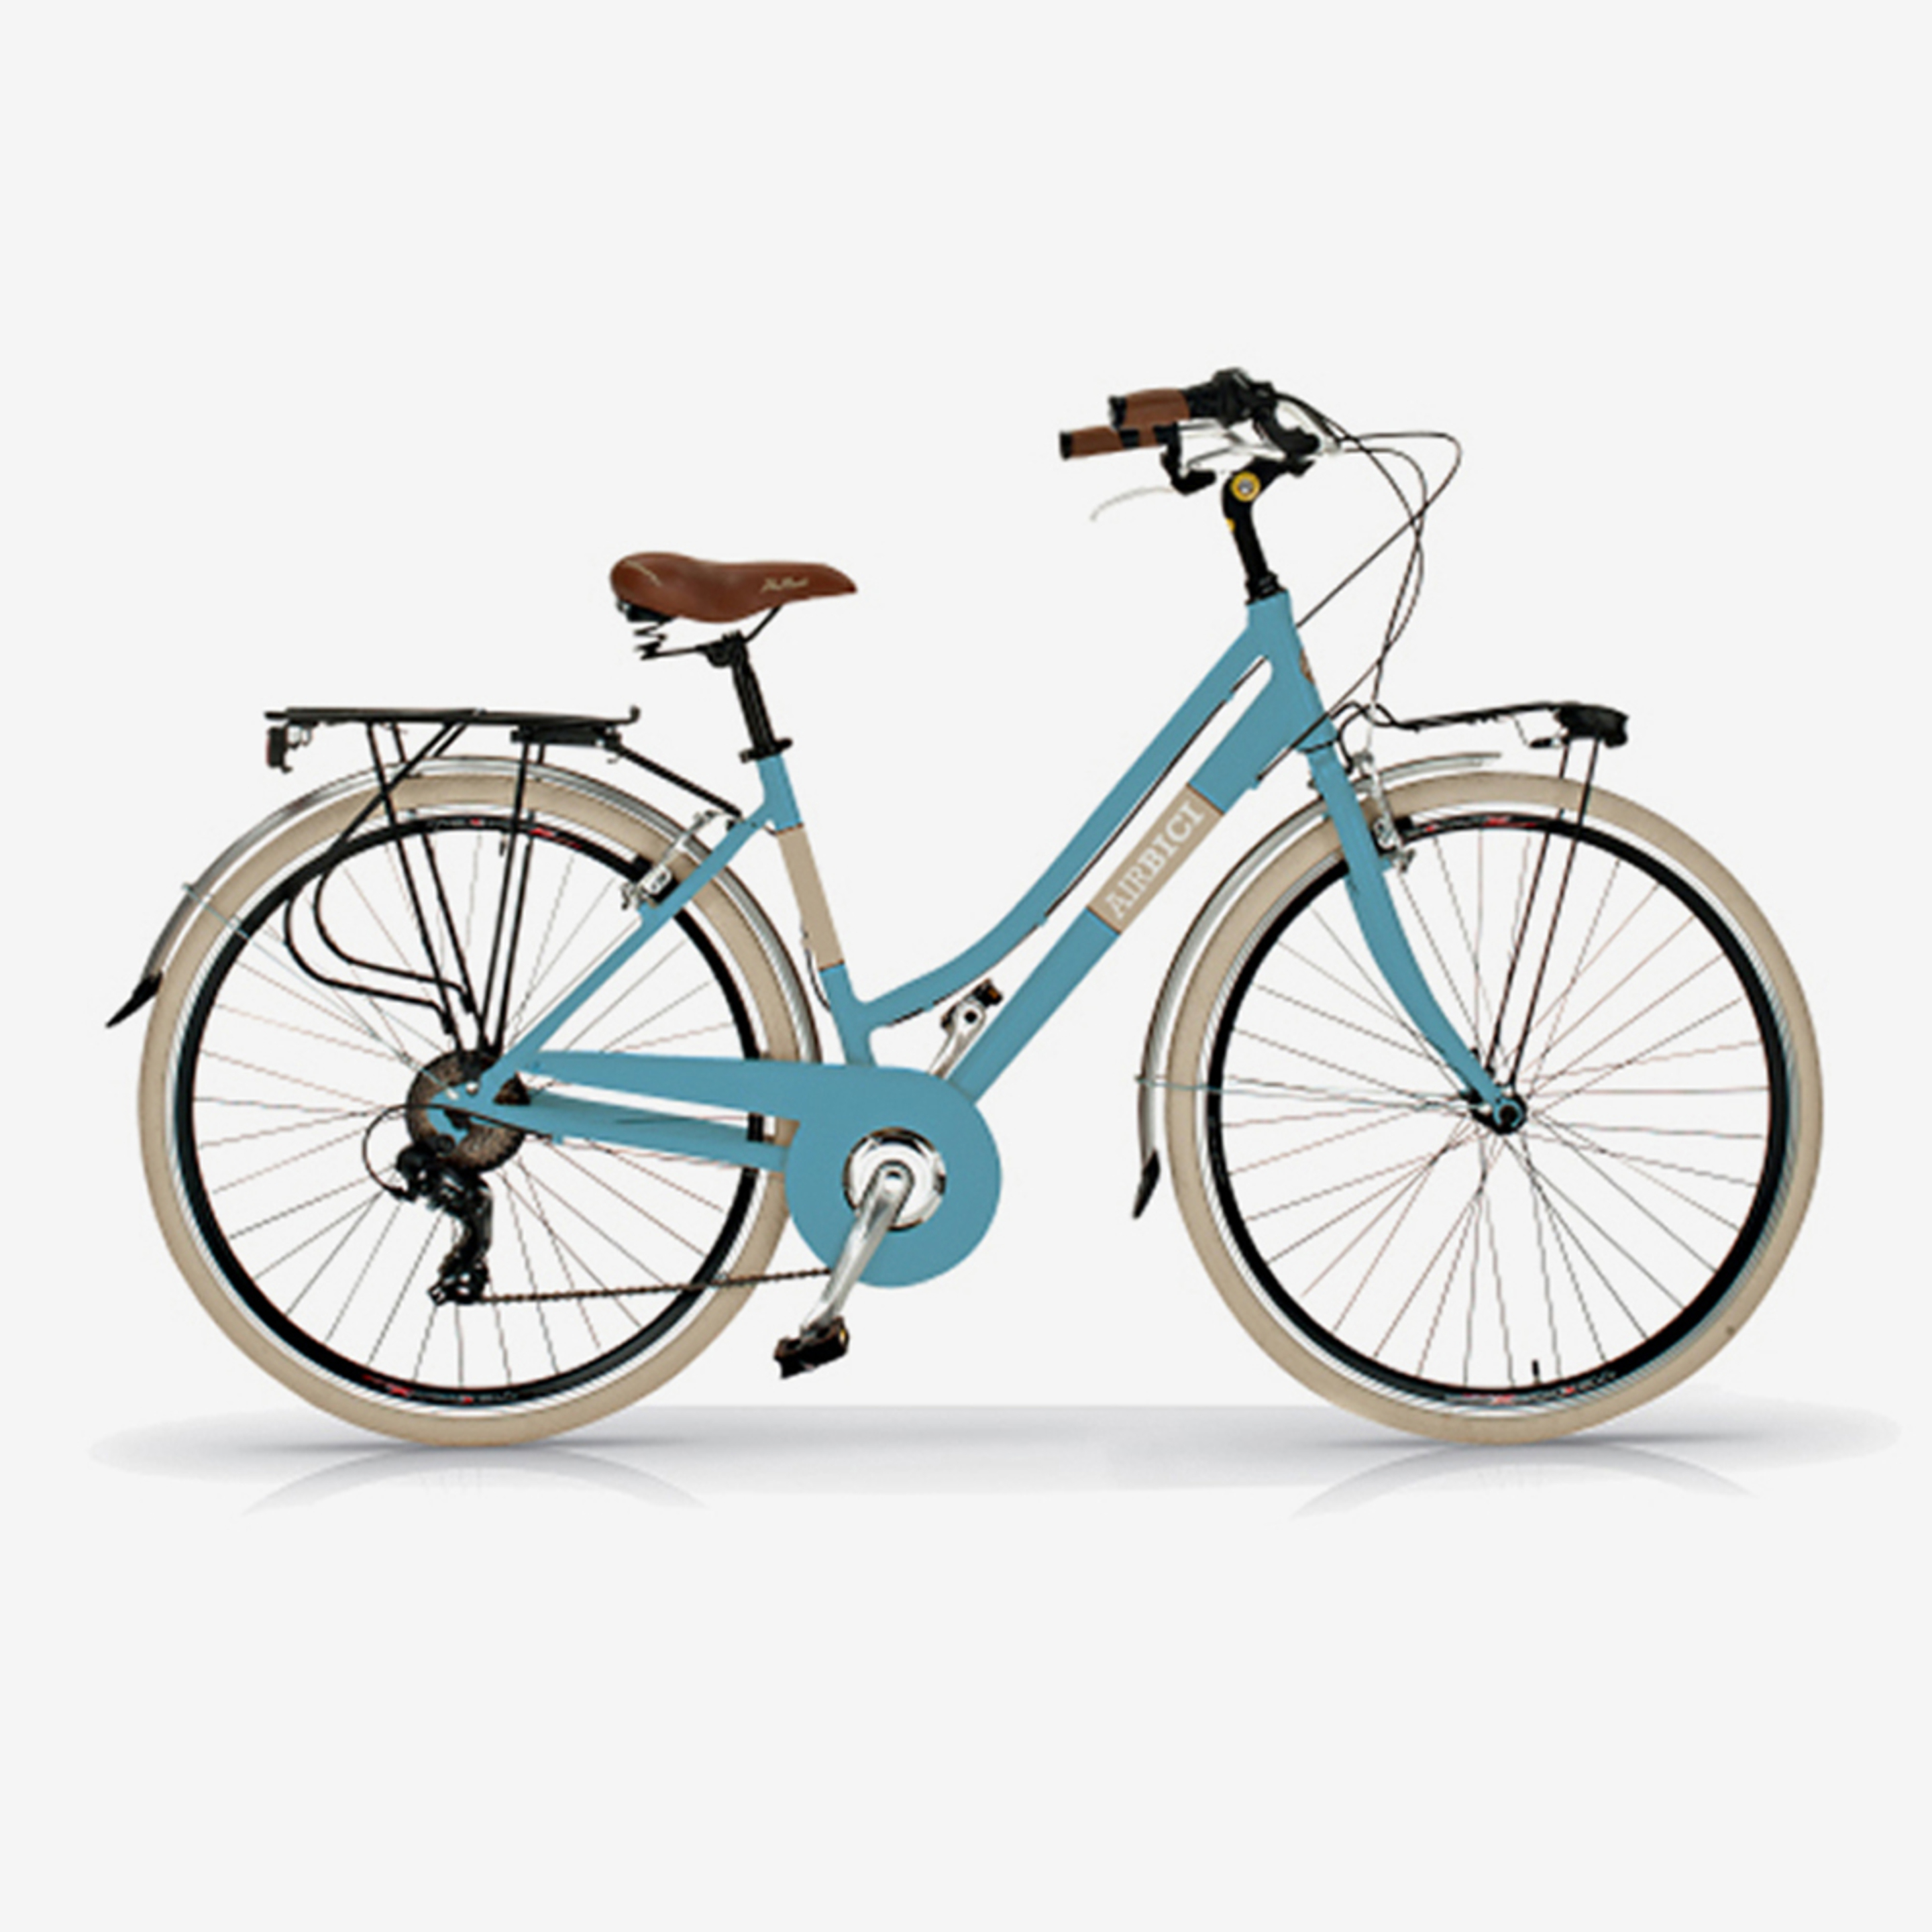 Bicicleta De Ciudad Airbici 605 Elegance - Azul Cielo - Vintage, paseo, ciudad  MKP